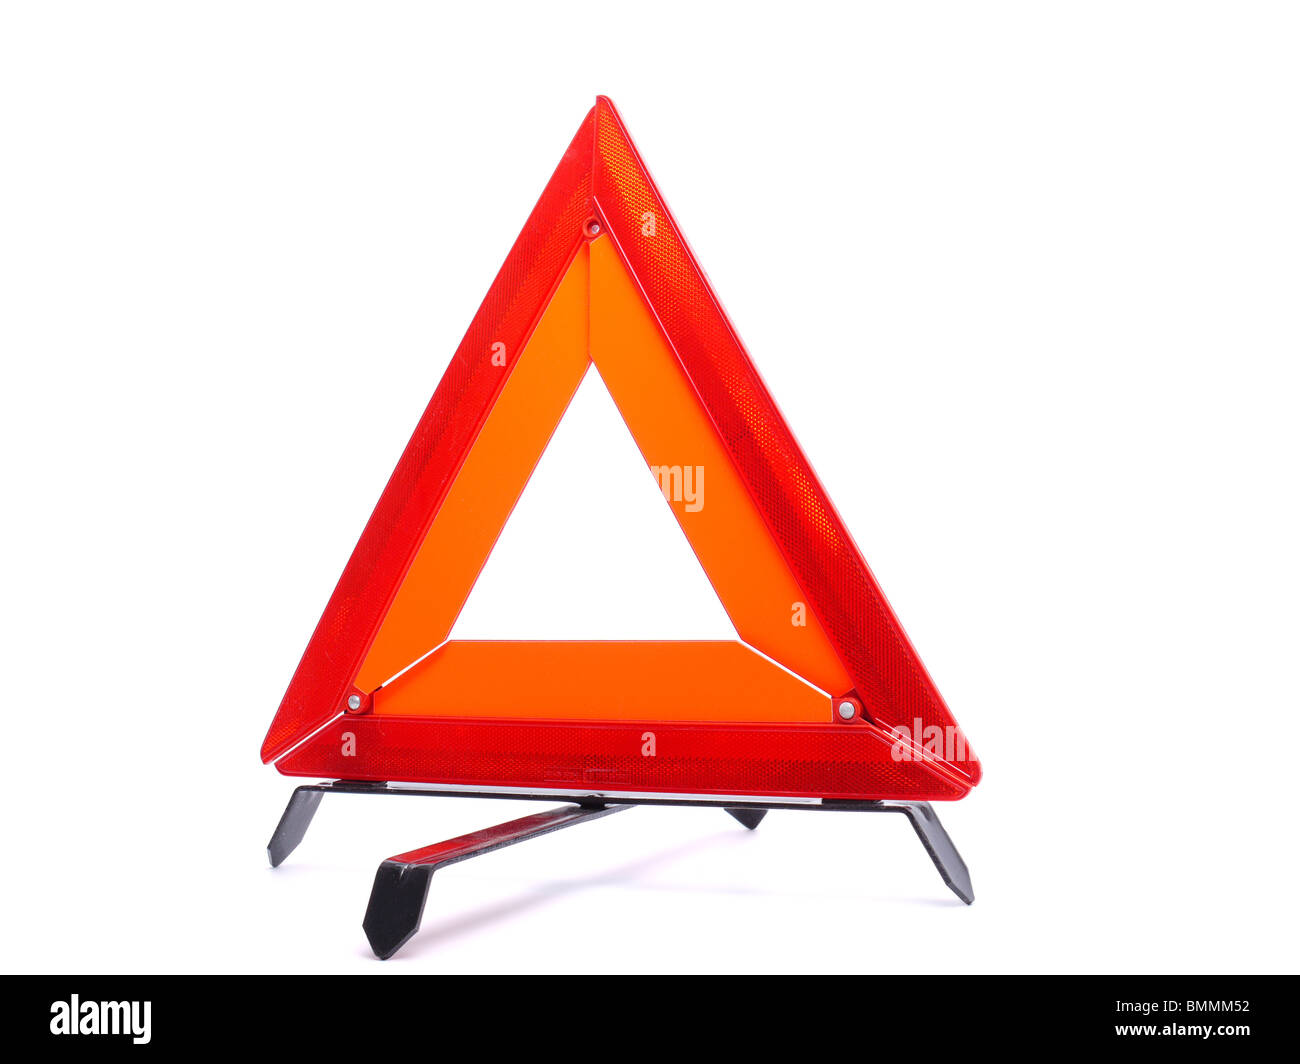 Warning triangle isolated on white background Stock Photo